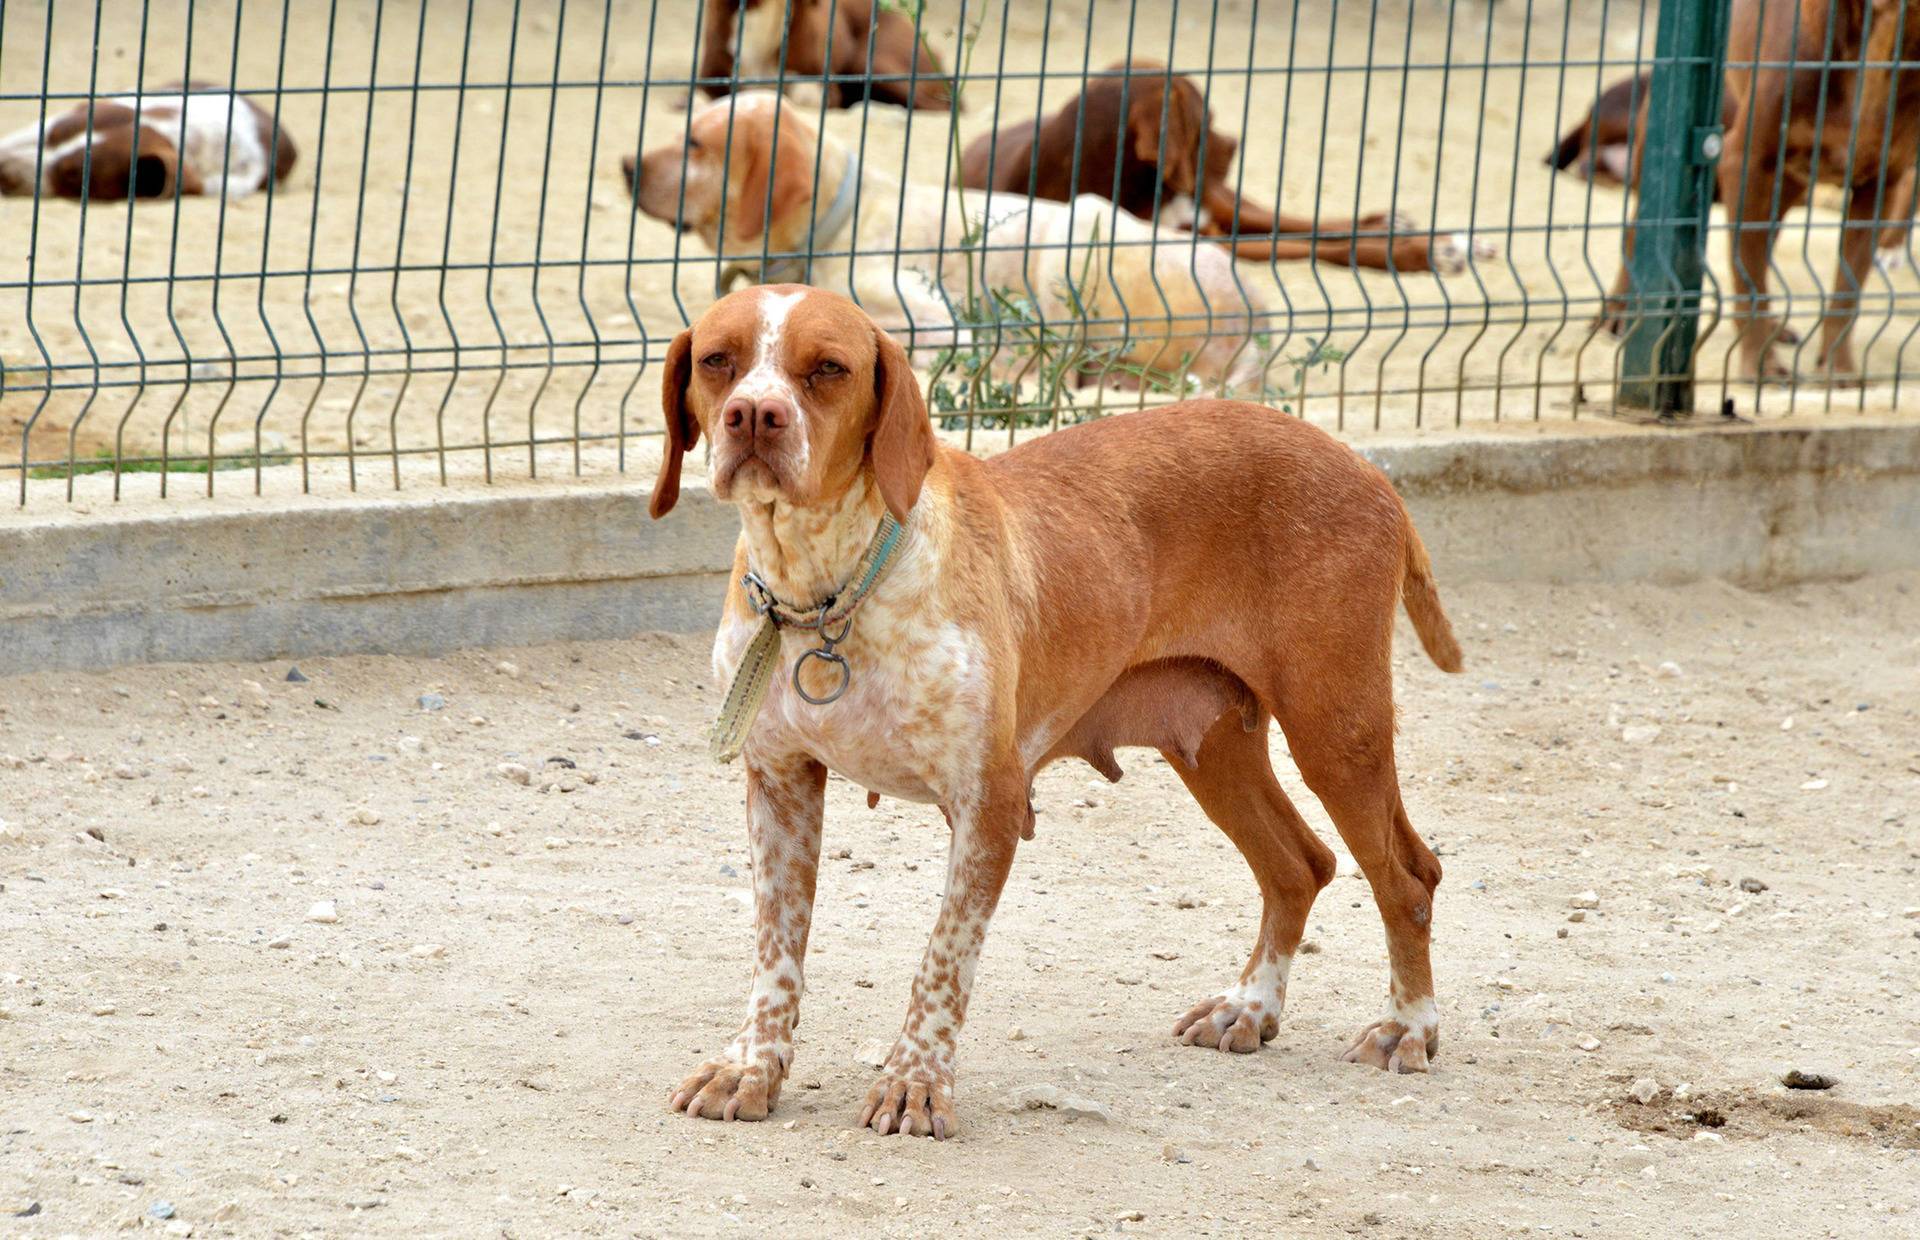 Каталбурун (турецкая гончая) — фото, описание породы собак, особенности характера